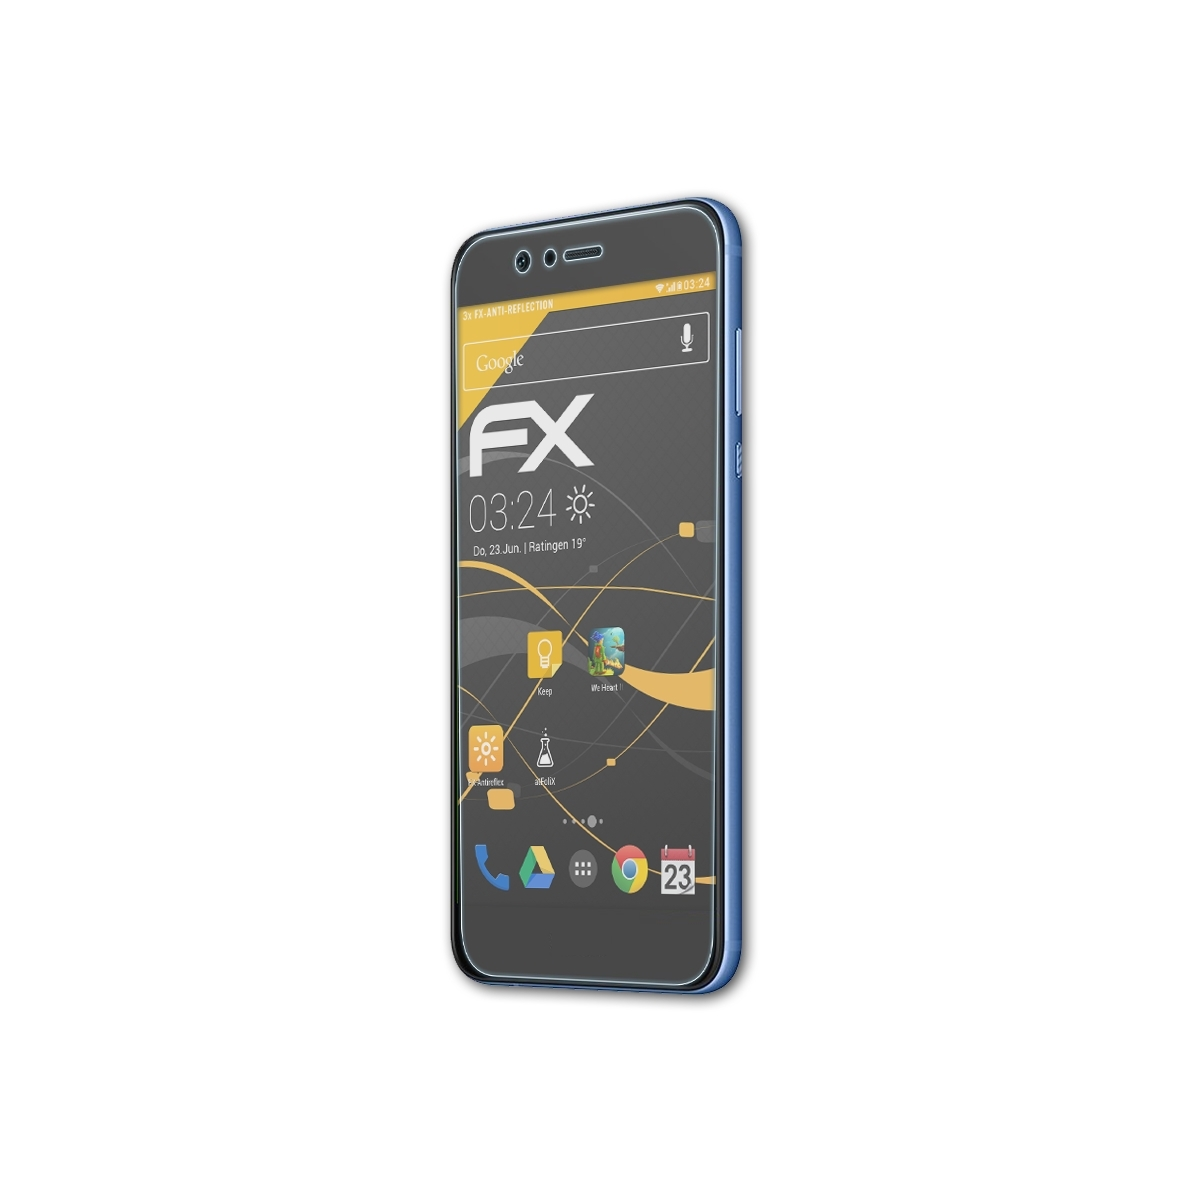 ATFOLIX 3x Huawei Displayschutz(für FX-Antireflex Nova Plus) 2